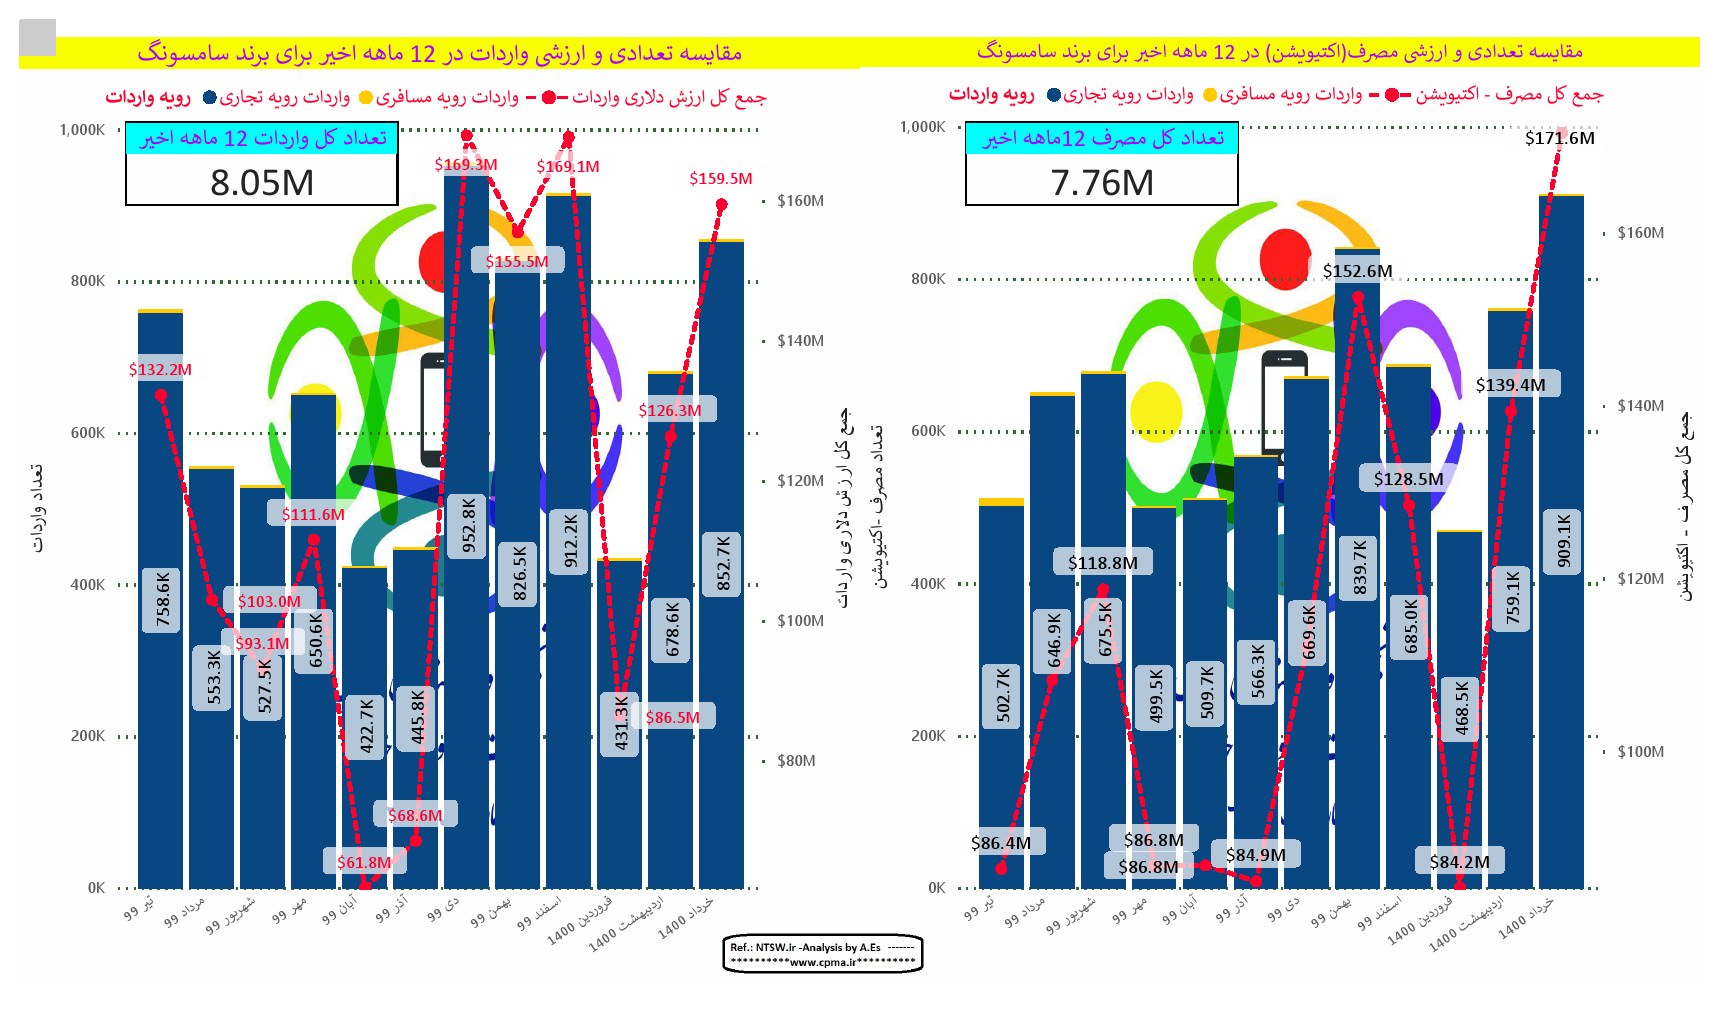 نمودار مقایسه میزان واردات و فعالسازی گوشی سامسونگ از تیر ۹۹ تا خرداد ۱۴۰۰